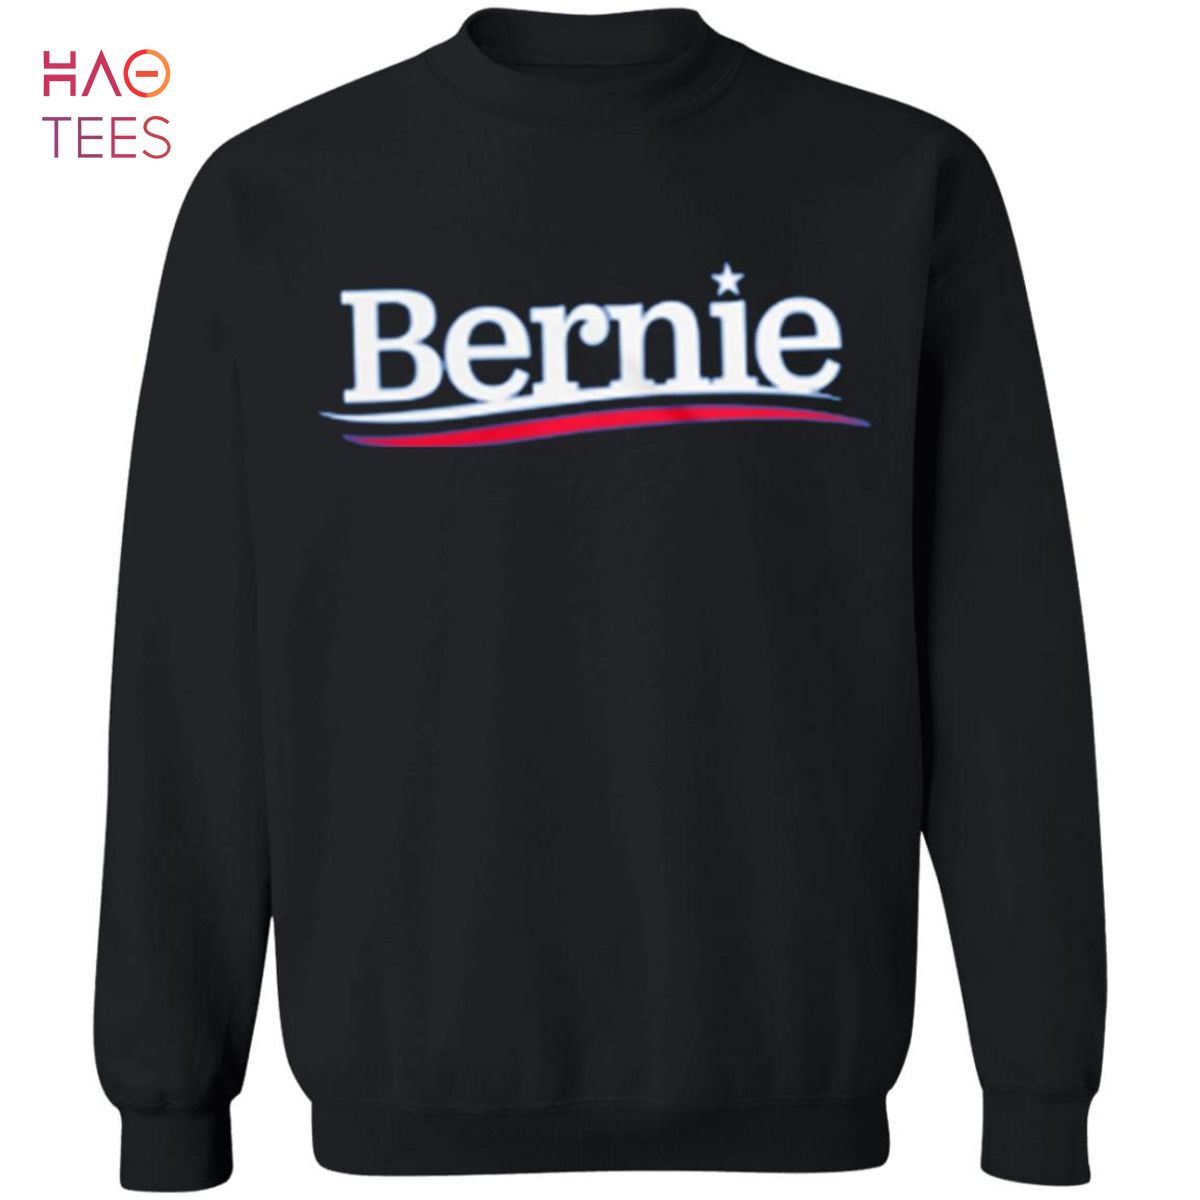 BEST Bernie Sanders Sweater